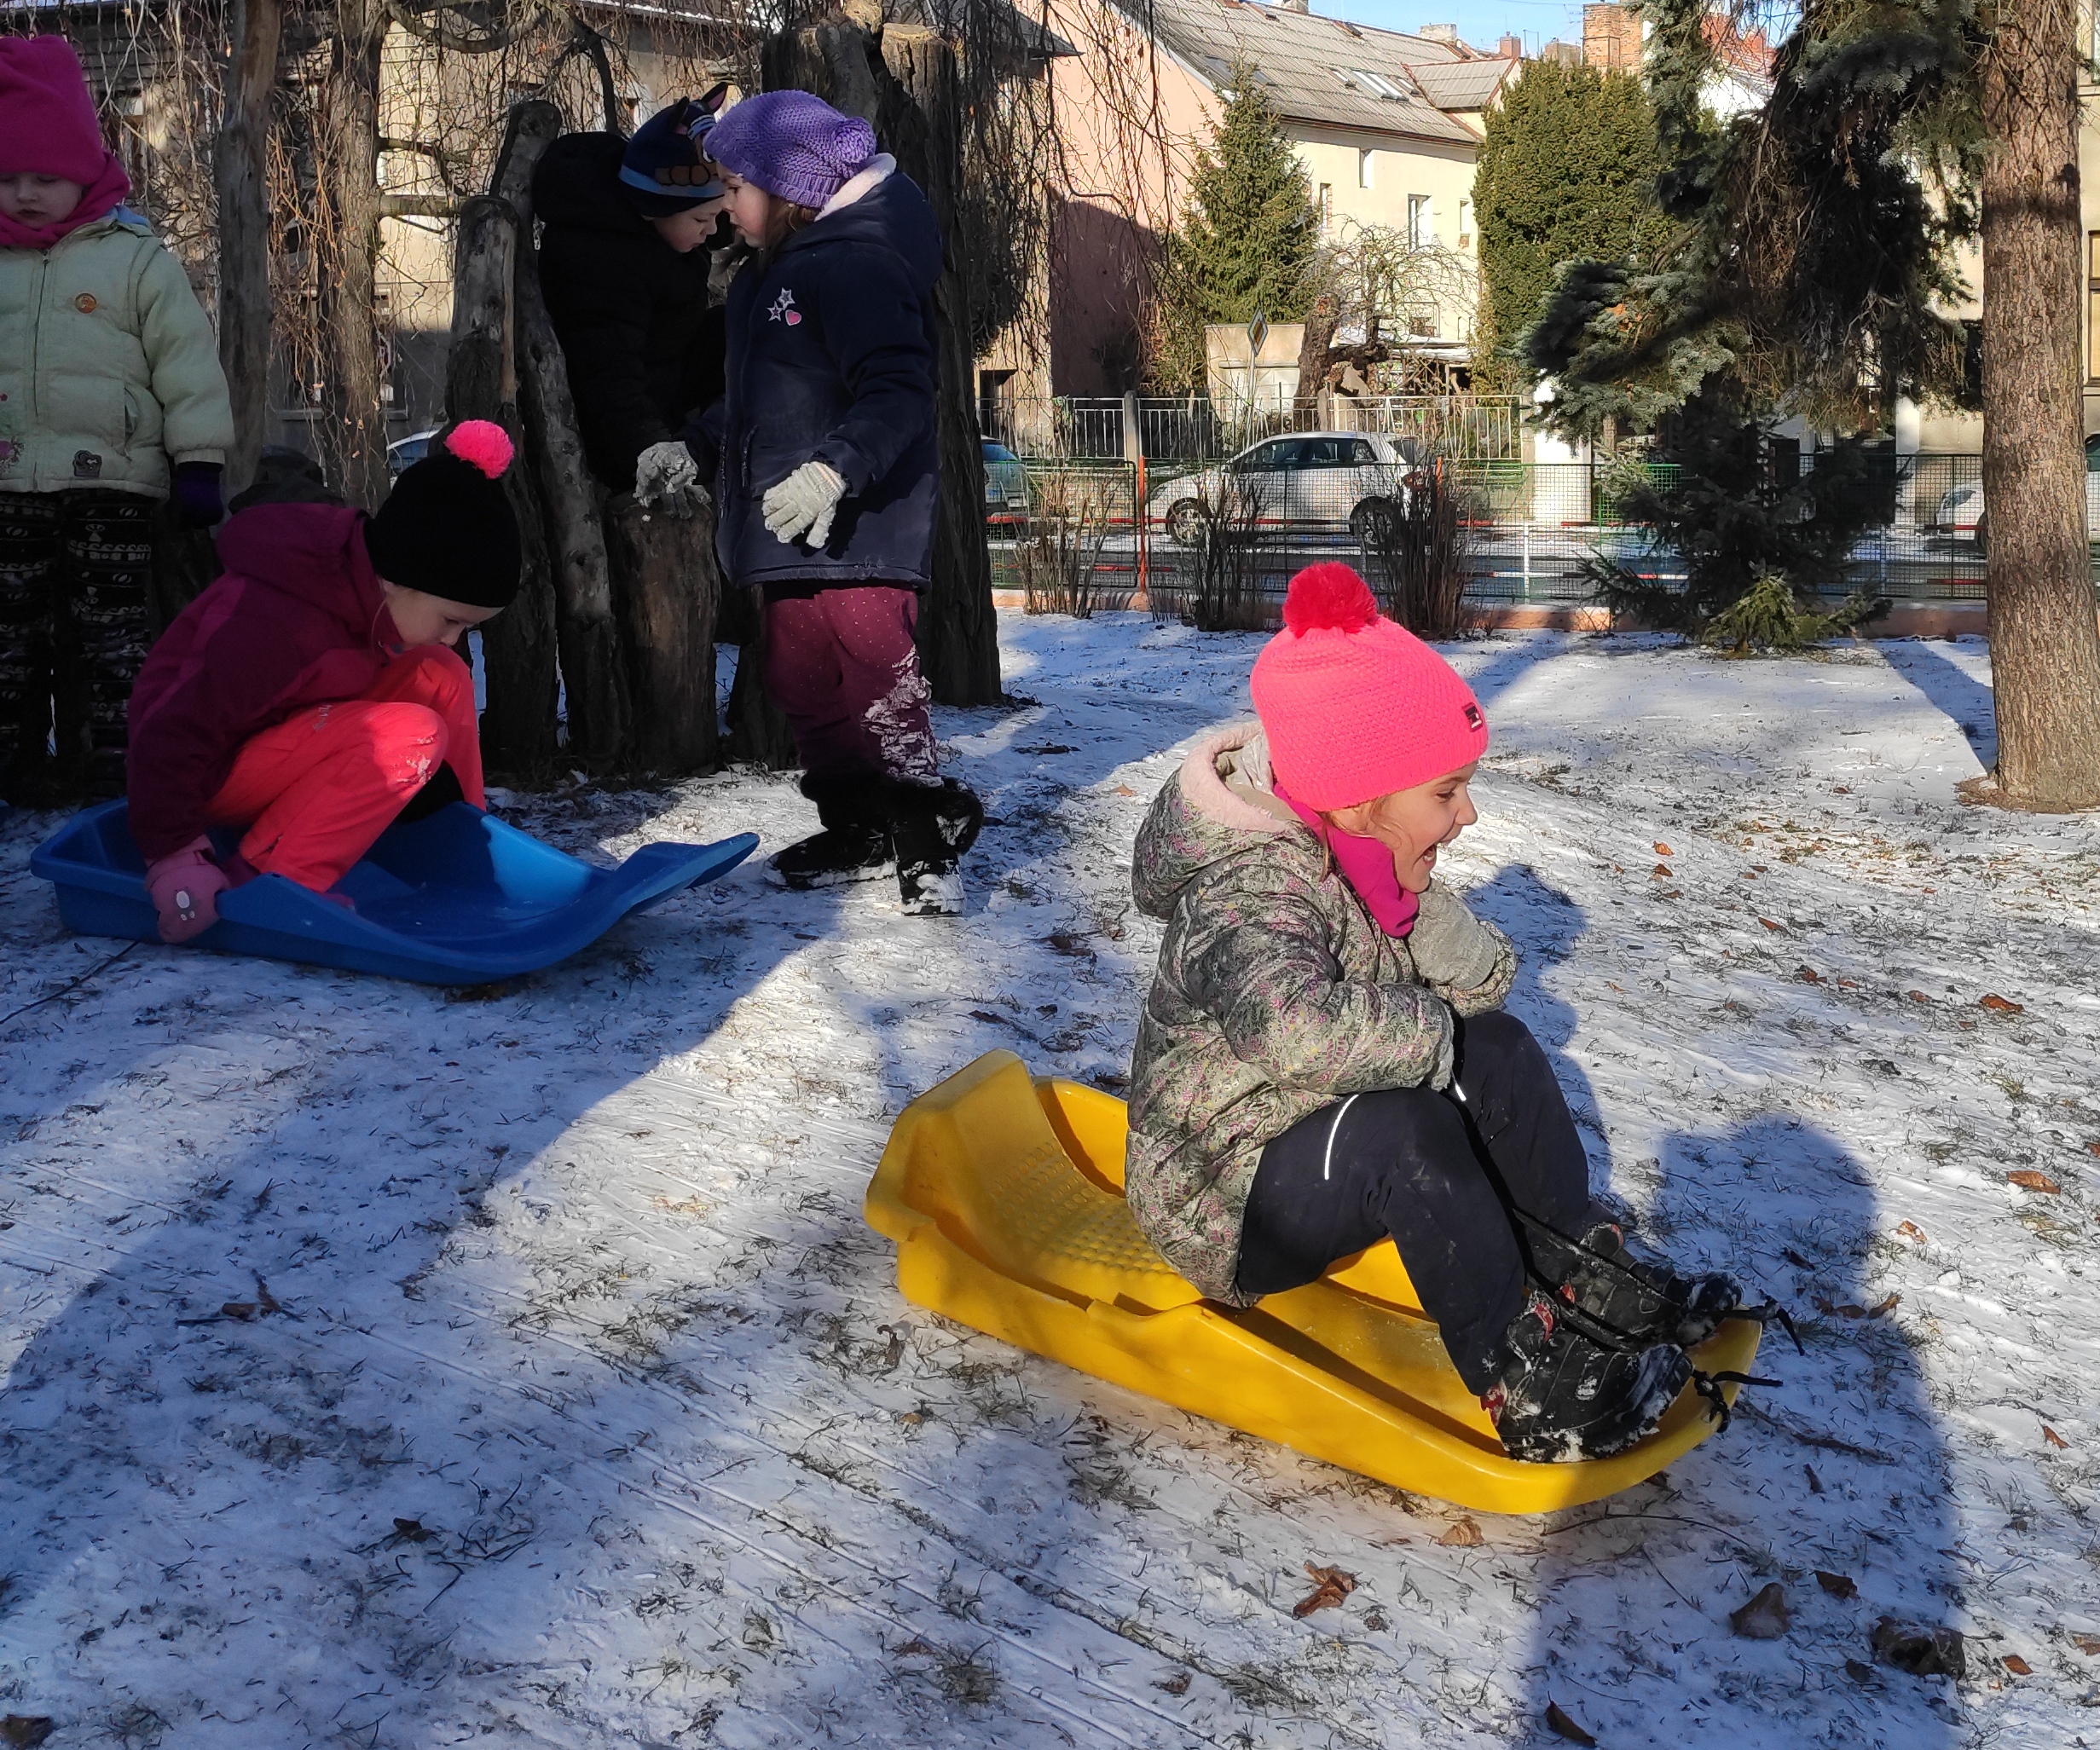 Děti ze Včeliček zkouší kvalitu sněhu :)